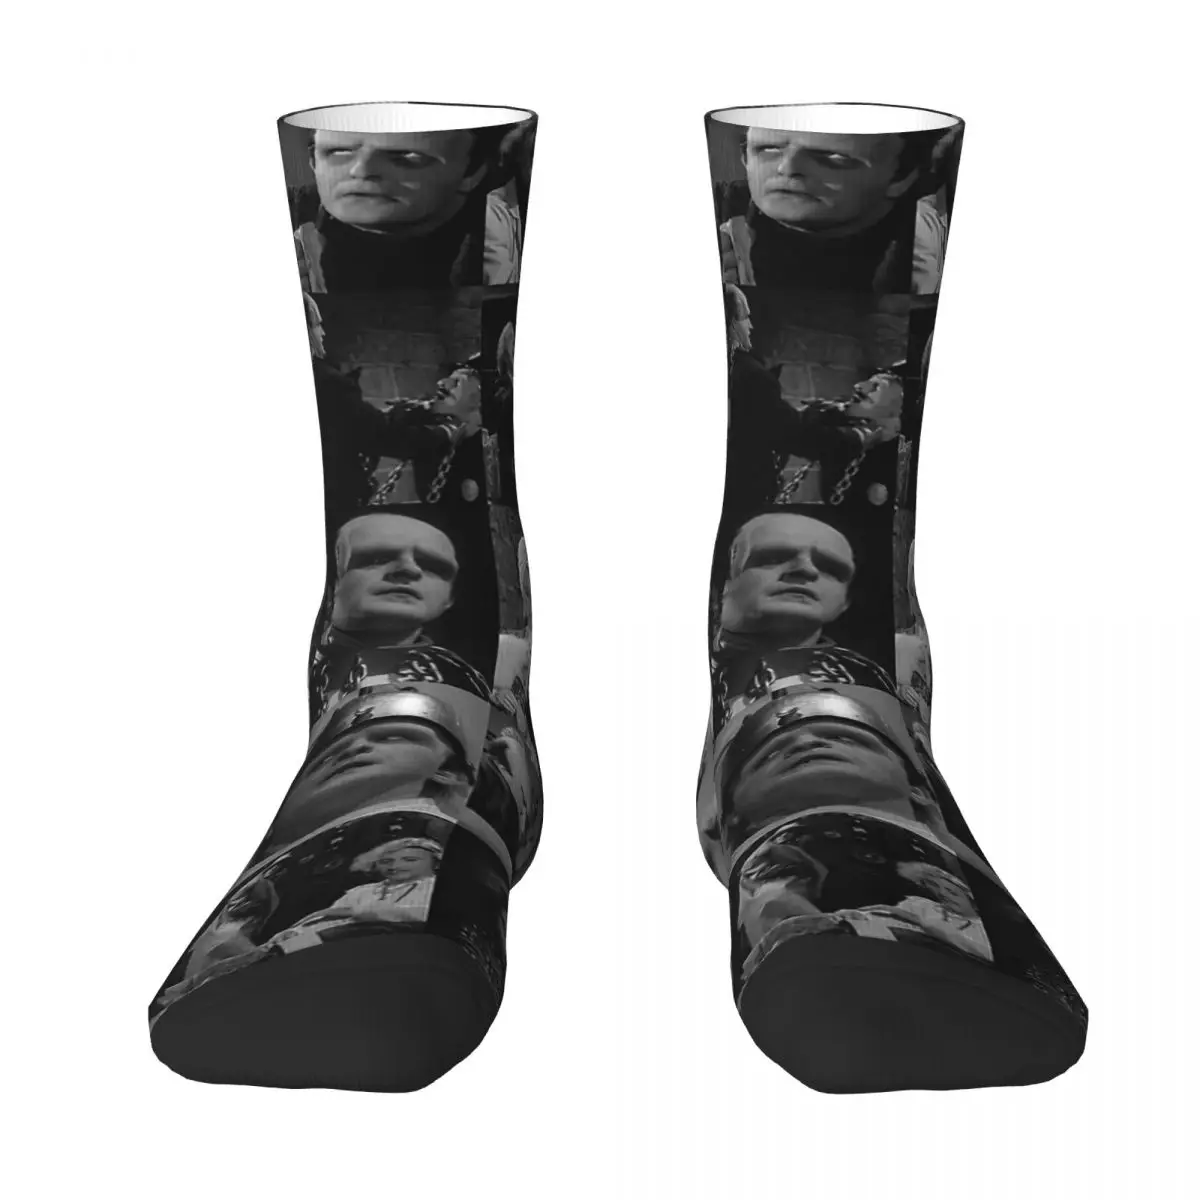 Young Frankenstein Adult Socks,Unisex socks,men Socks women Socks